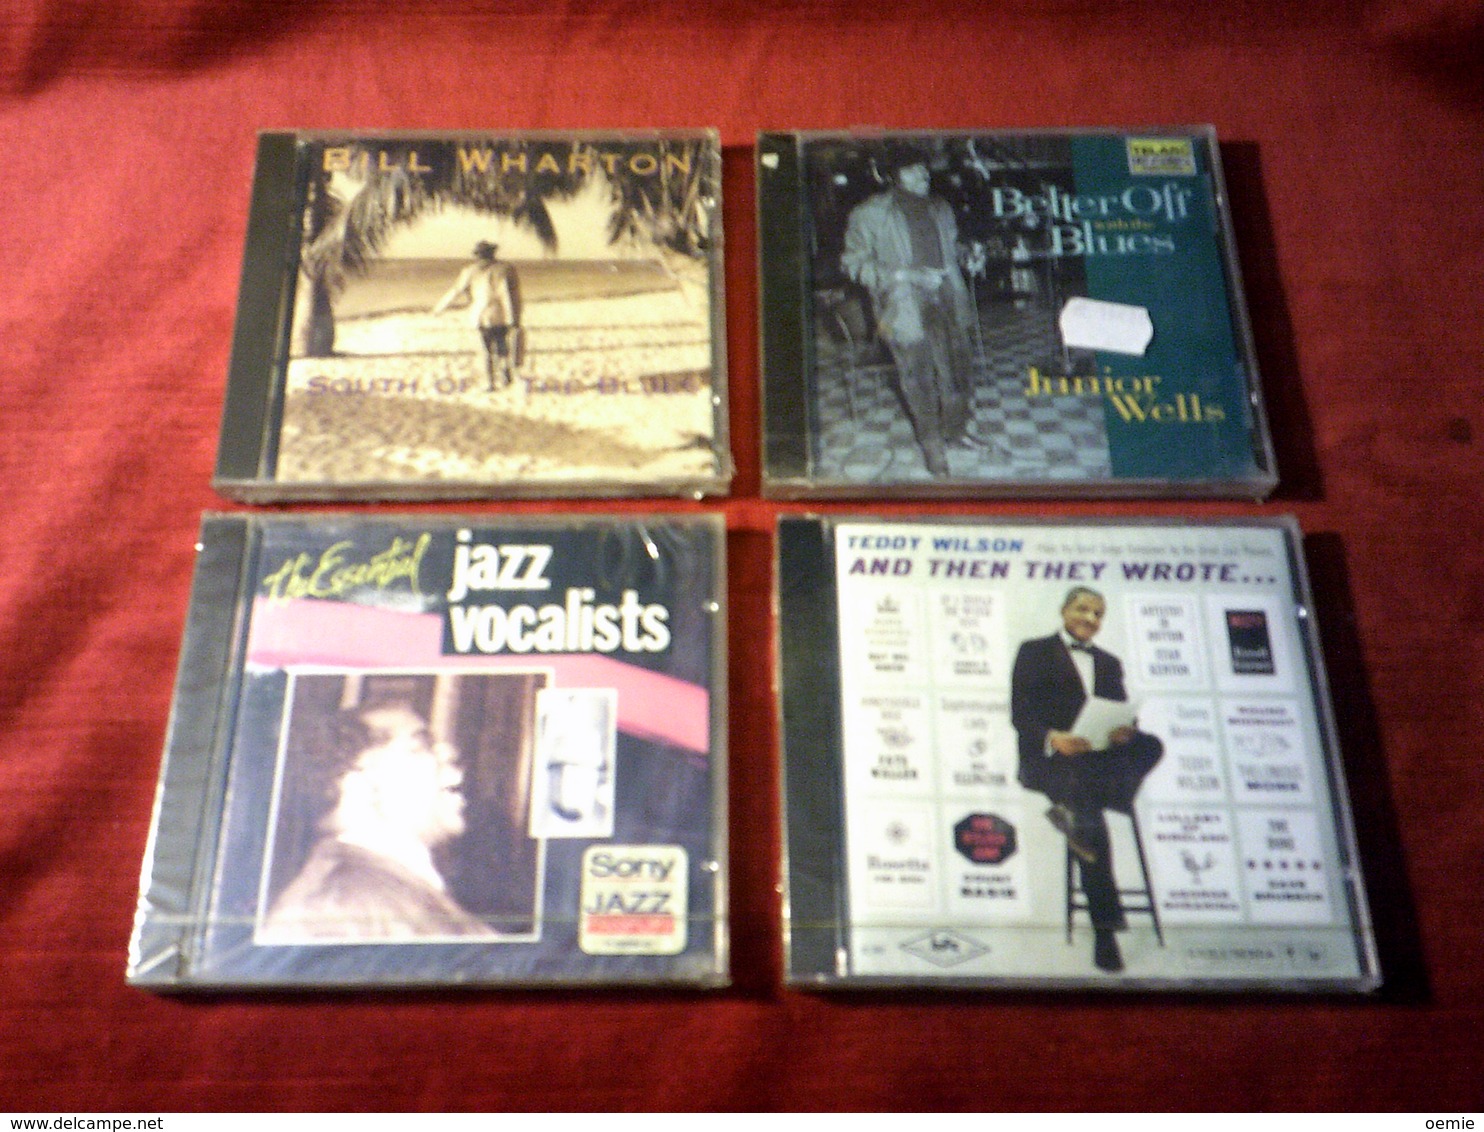 COLLECTION DE 4 CD ALBUM DE JAZZ ° BILL WHARTON + TEDDY WILSON + JUNIORS WELLS + THE ESSENTIAL JAZZ VOCALISTS - Collections Complètes